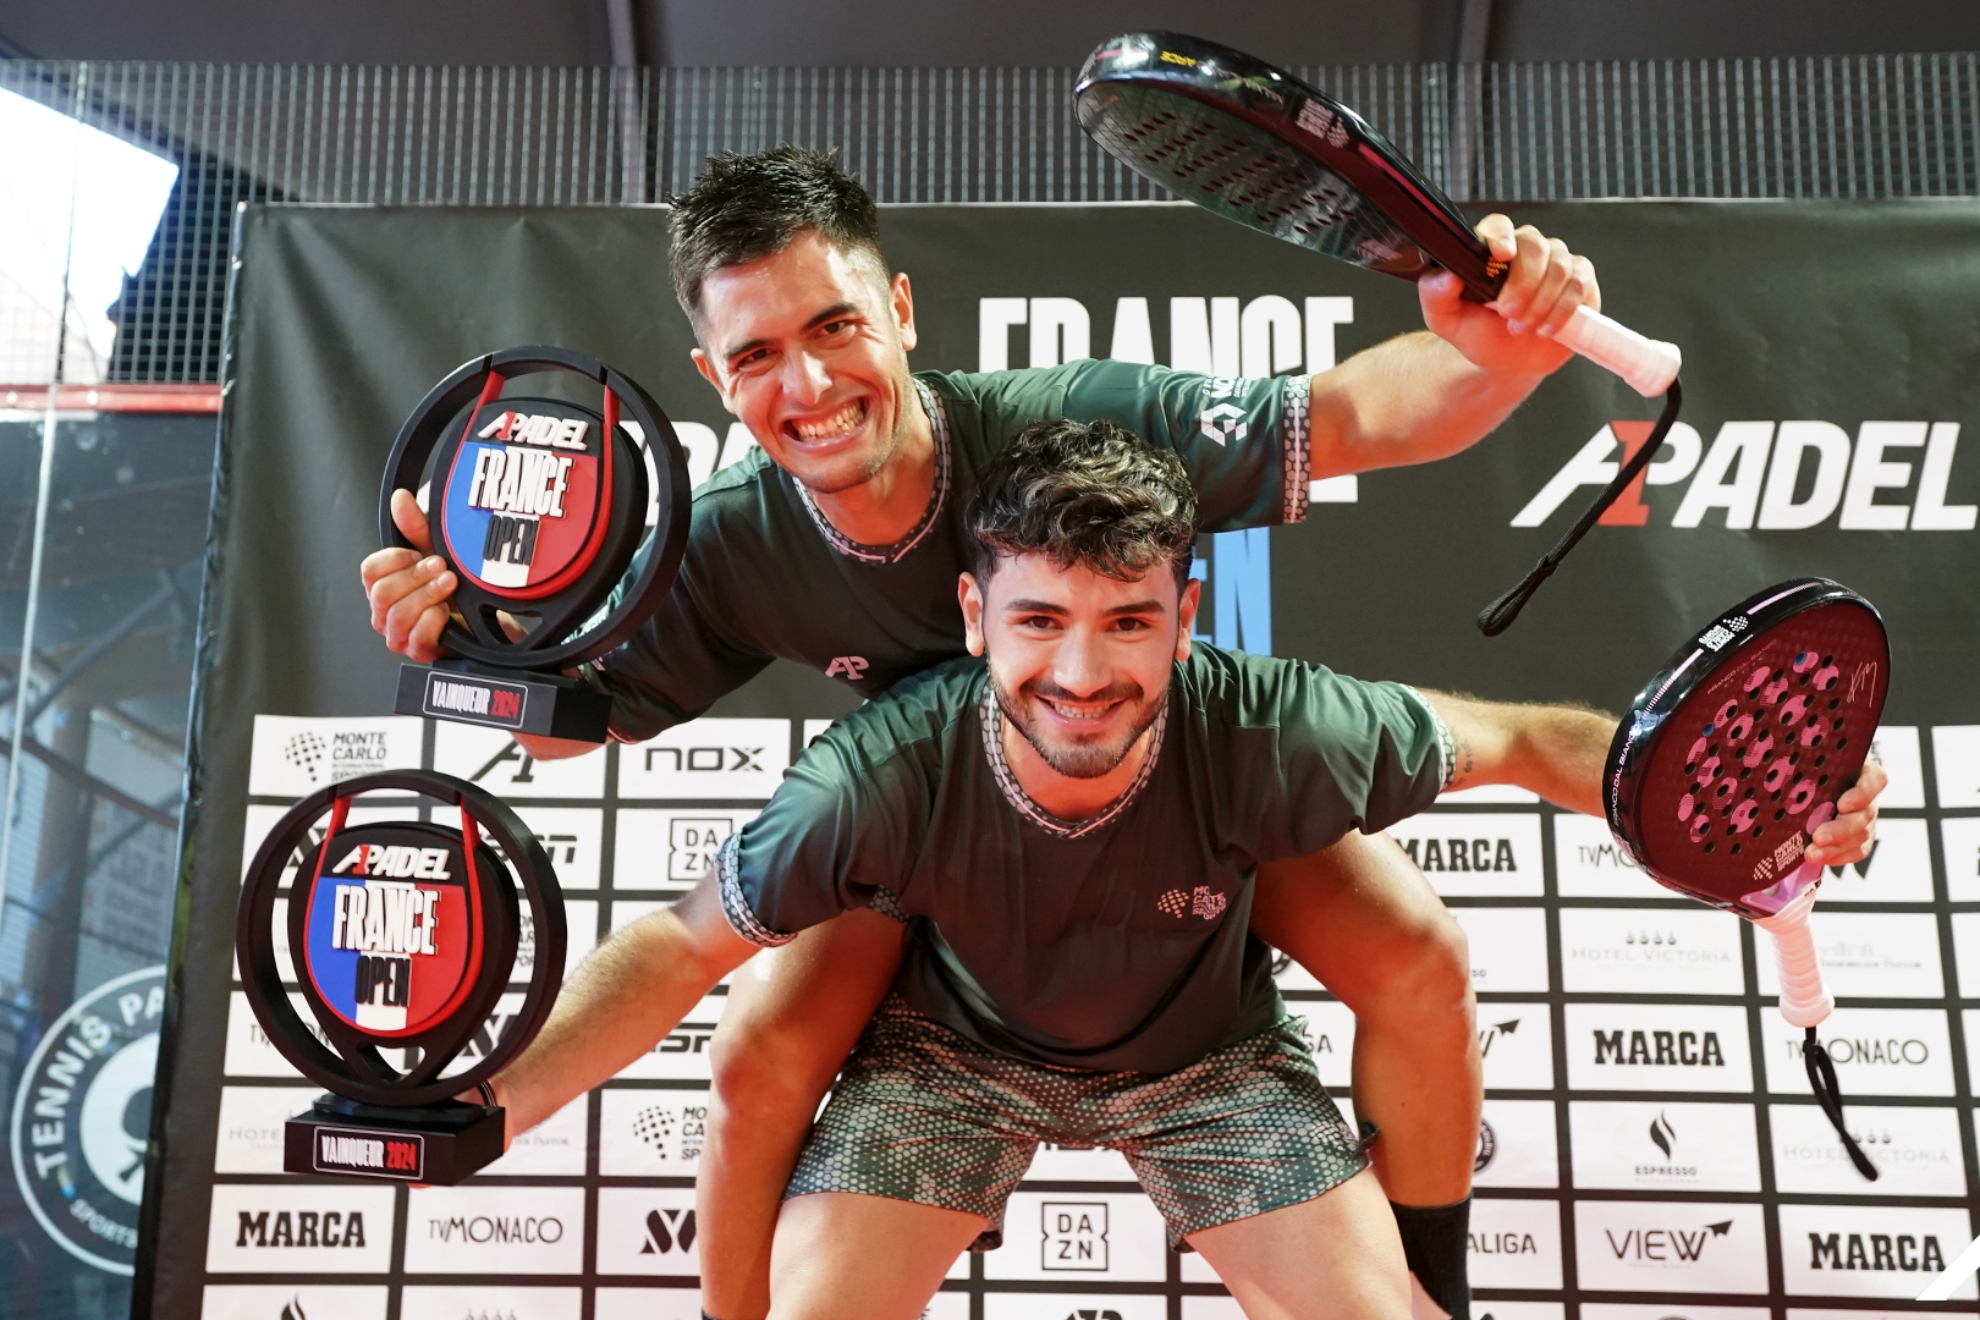 Arce y Dal Bianco celebran el triunfo en Francia.